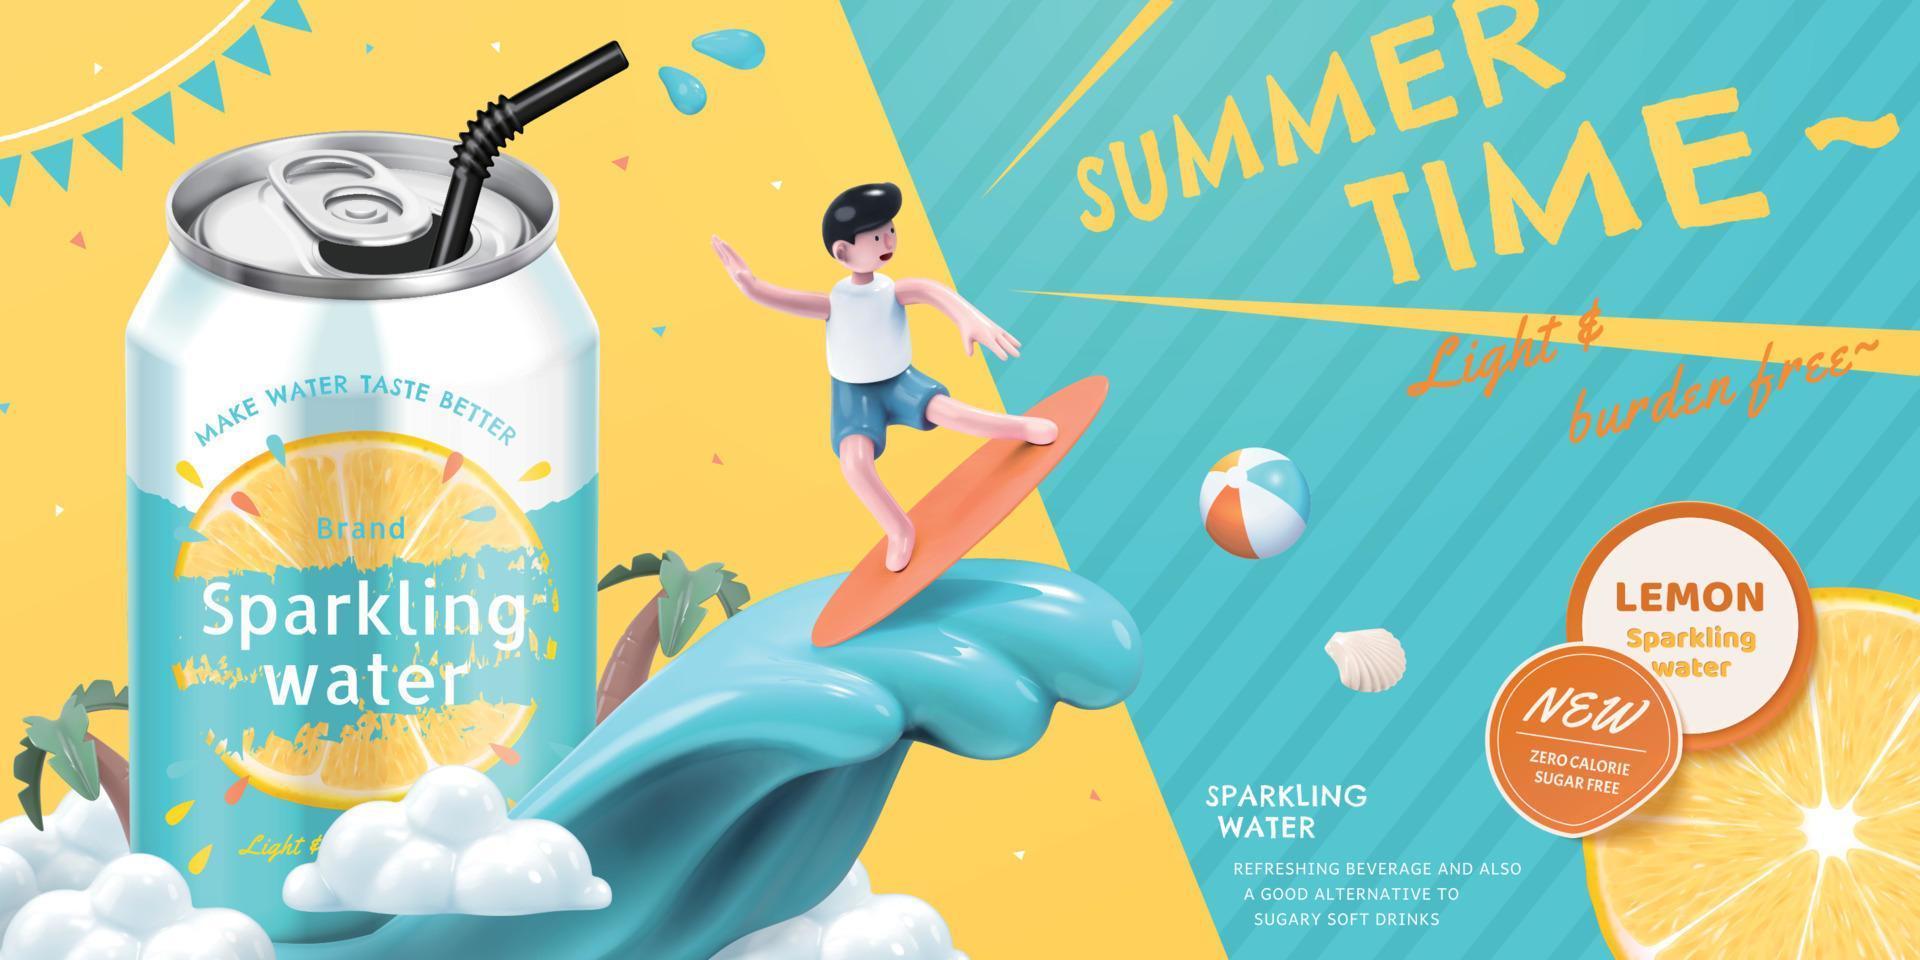 de Anúncios modelo do limão espumante água, com fofa Garoto surfar ao lado refrigerante pode, conceito do verão bebida, 3d ilustração vetor